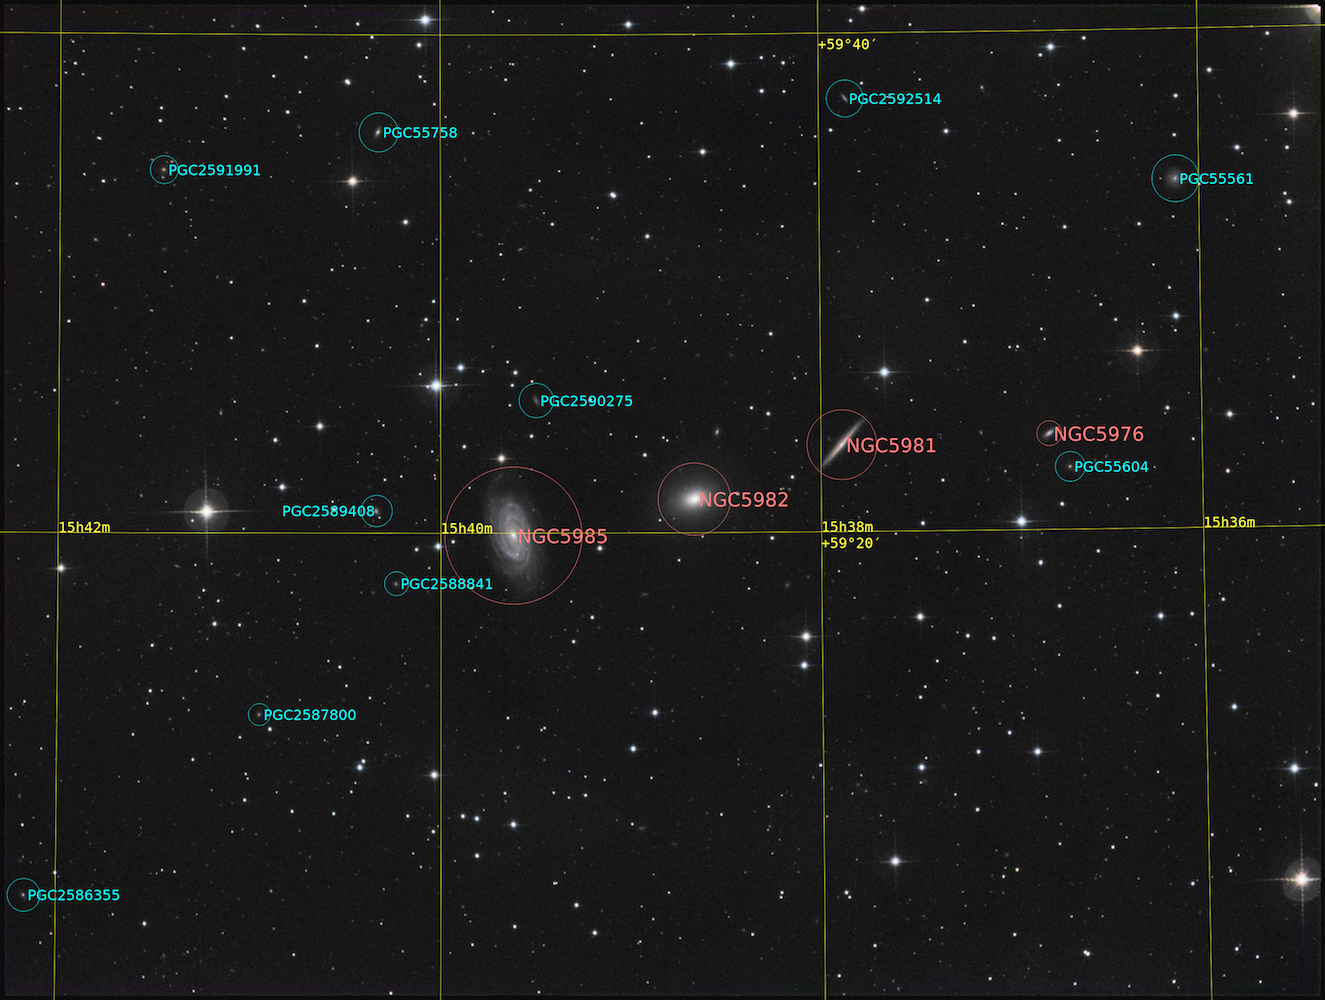 61ea695b7e815_NGC5982annotee.jpg.f5503f66e2d8b2cb262c2010db7d9a5e.jpg